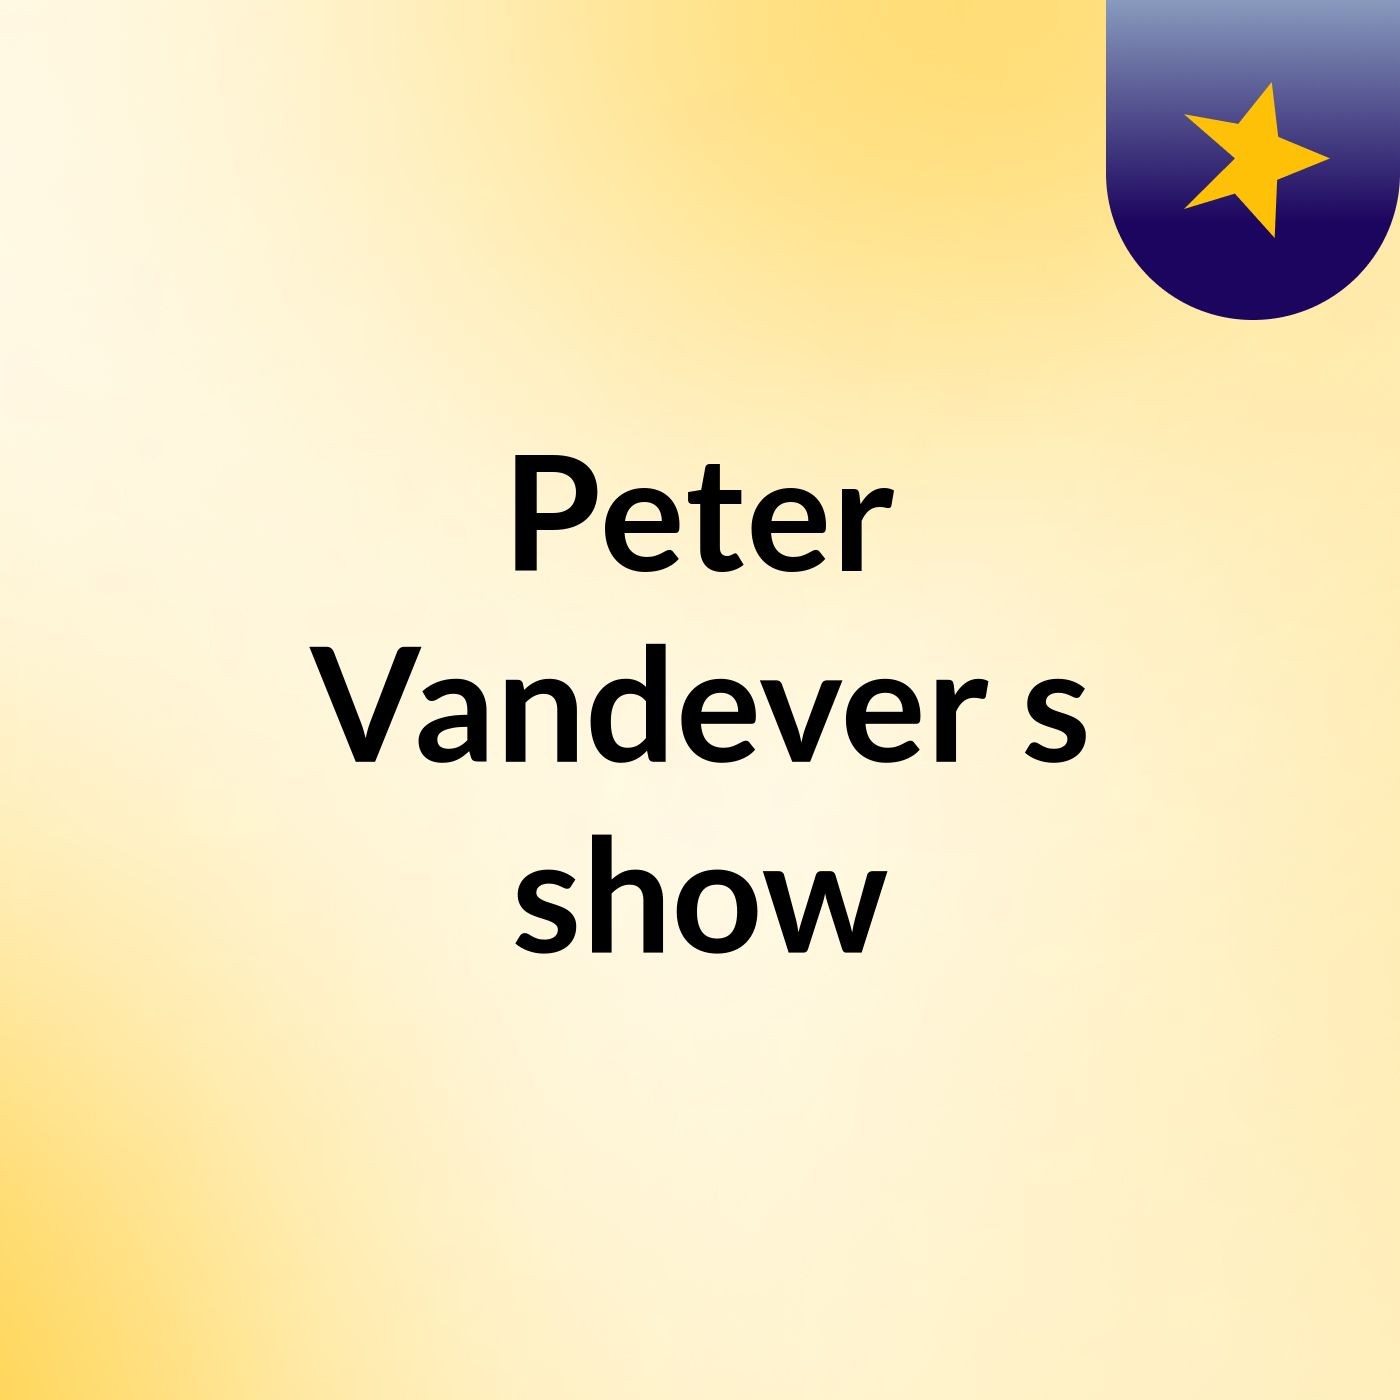 Peter Vandever's show